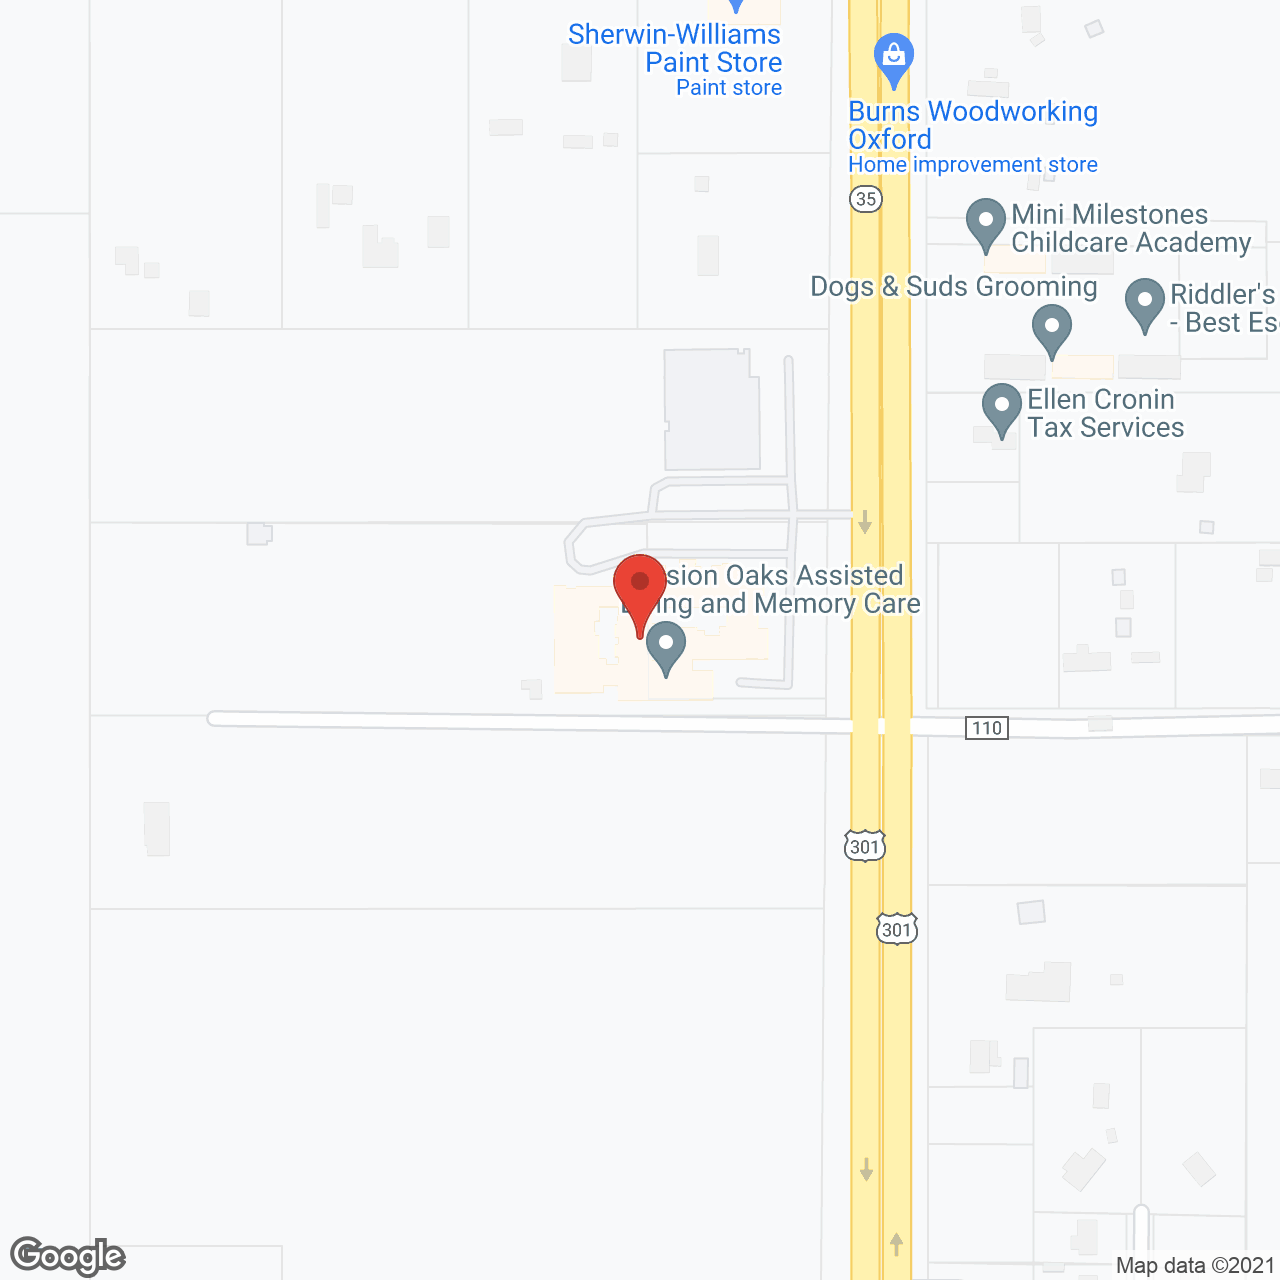 Mission Oaks in google map